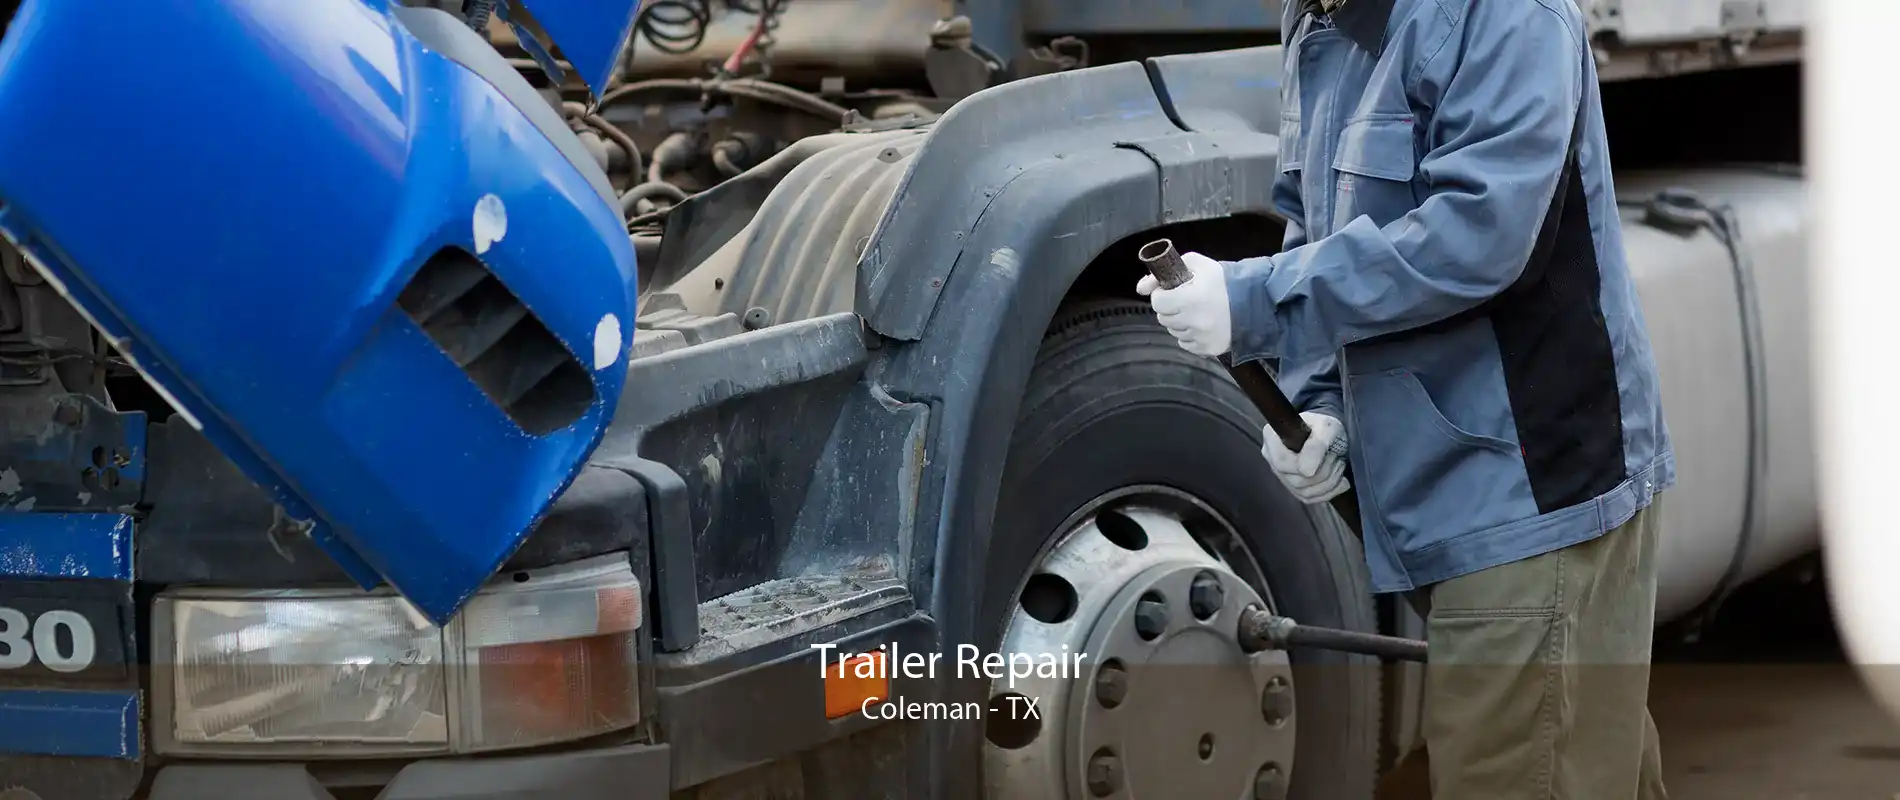 Trailer Repair Coleman - TX